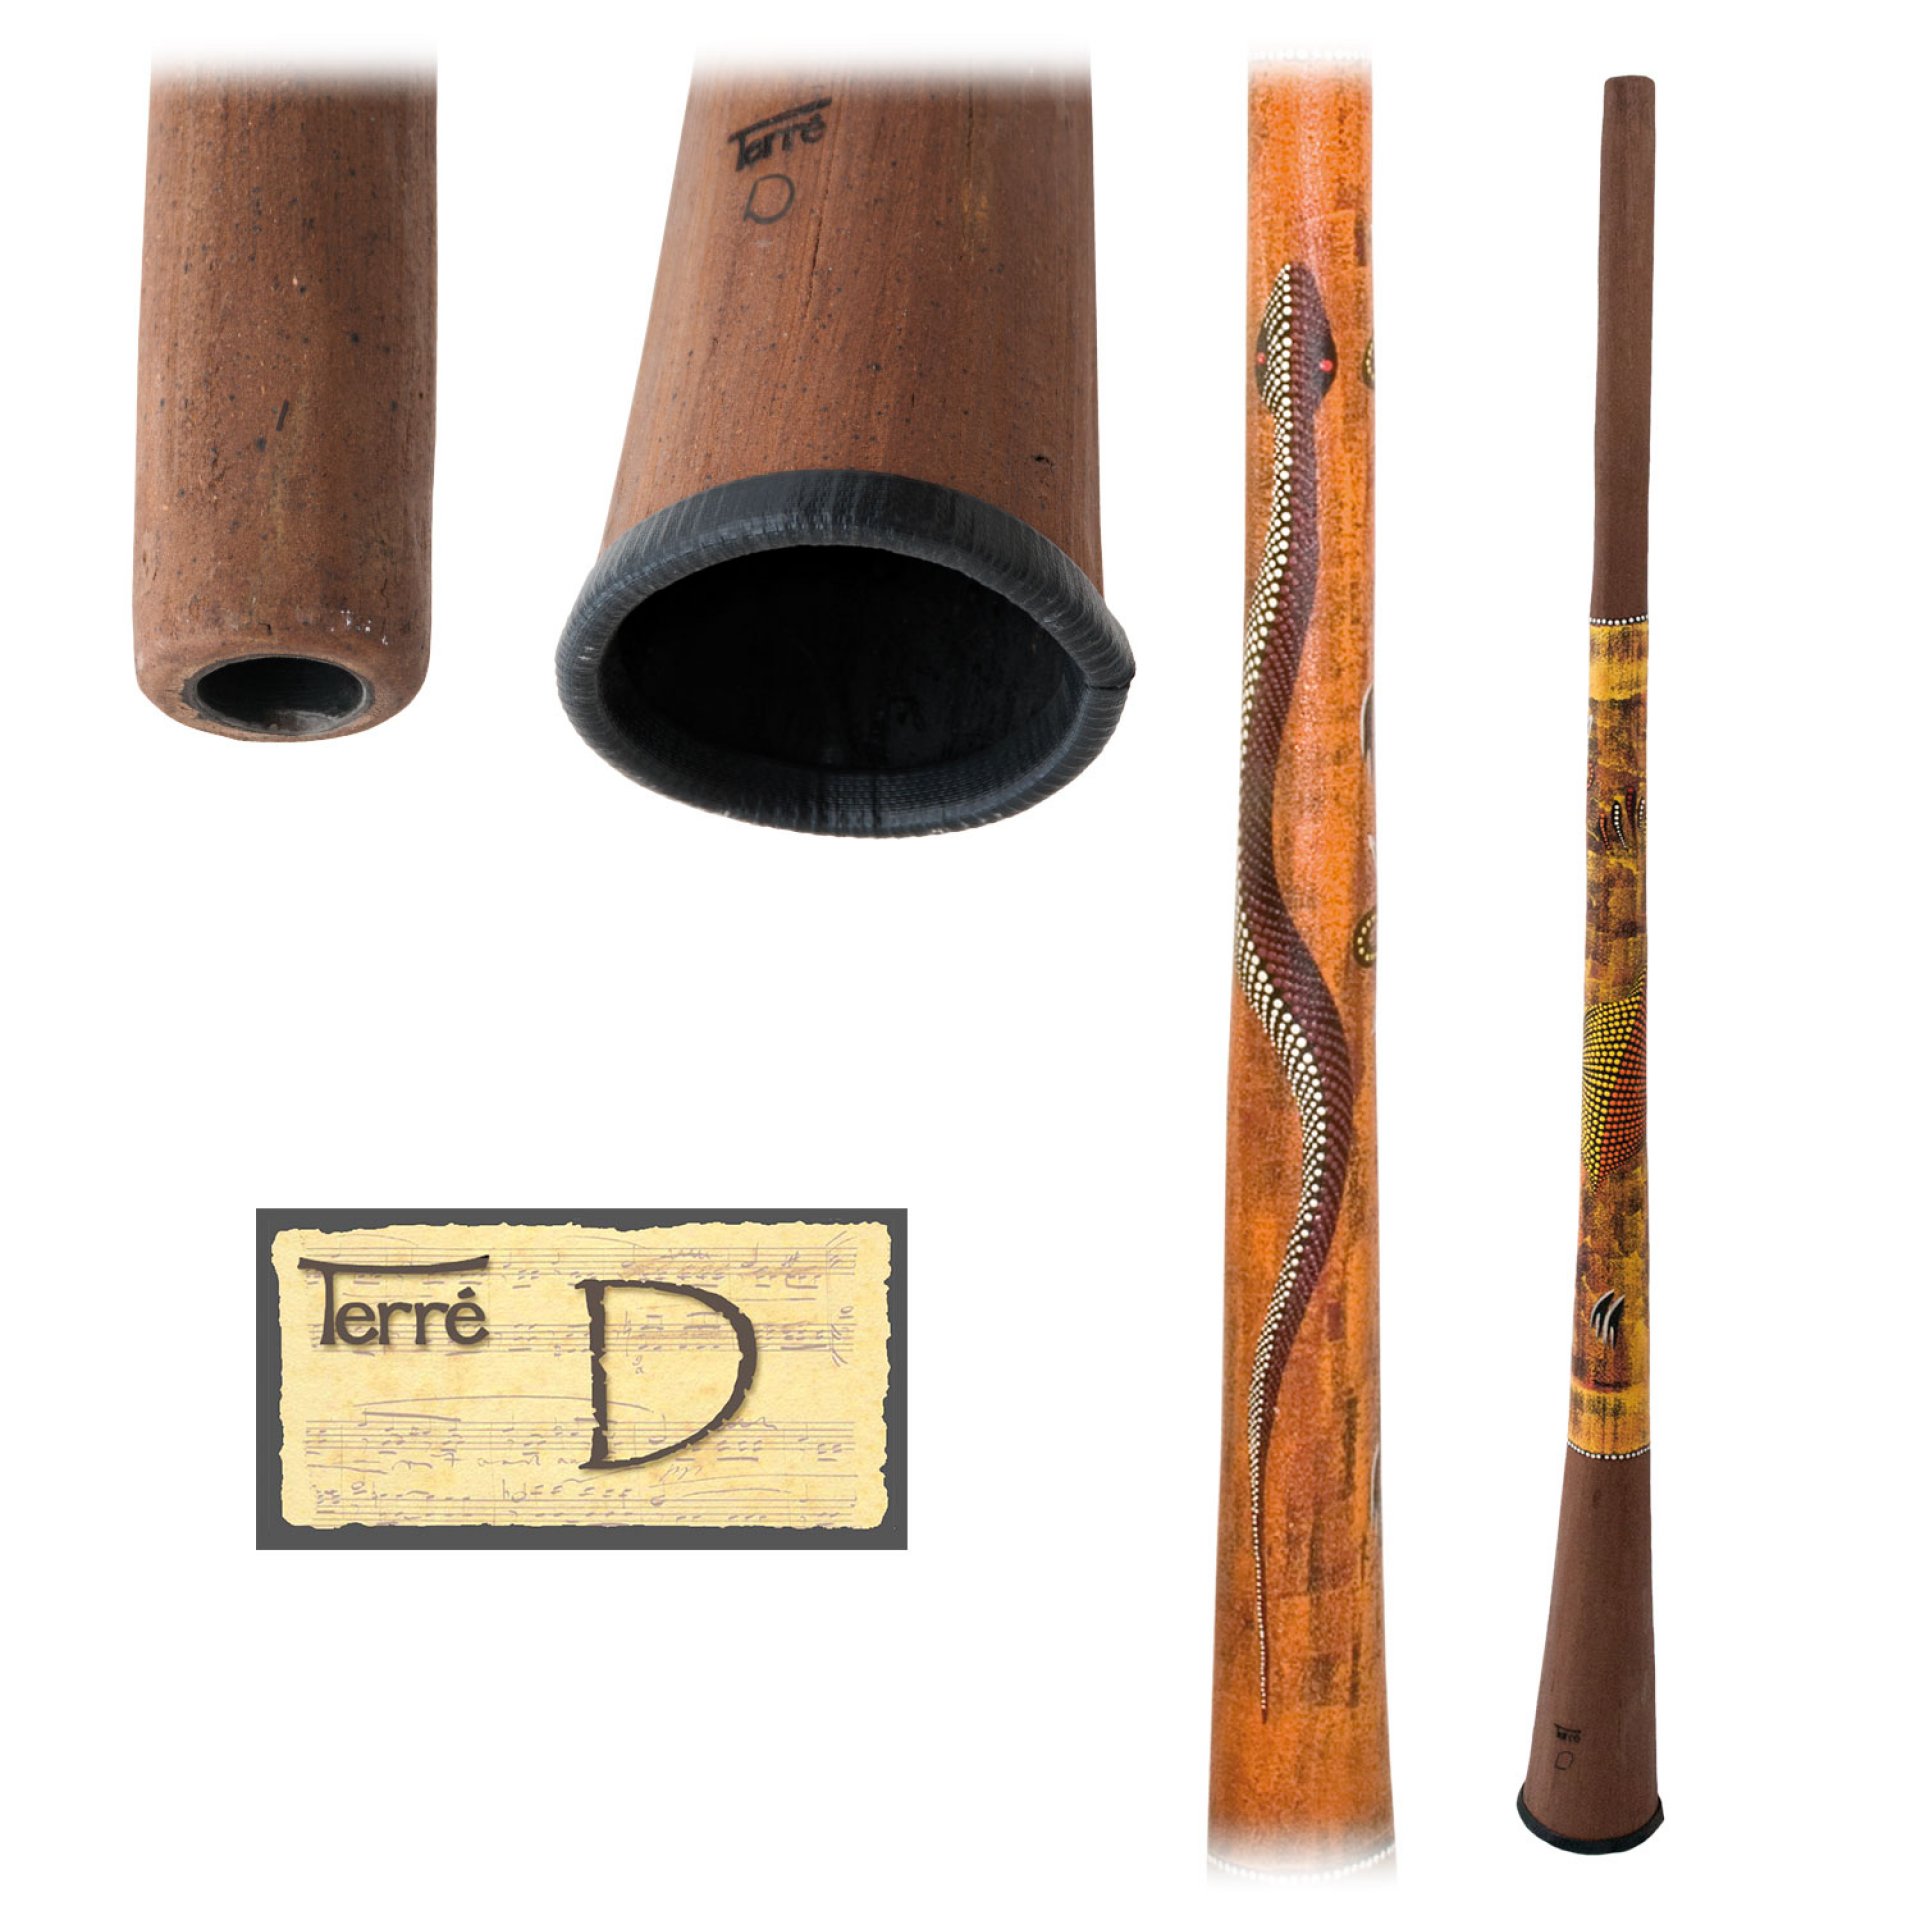 Baked wood Didgeridoo D